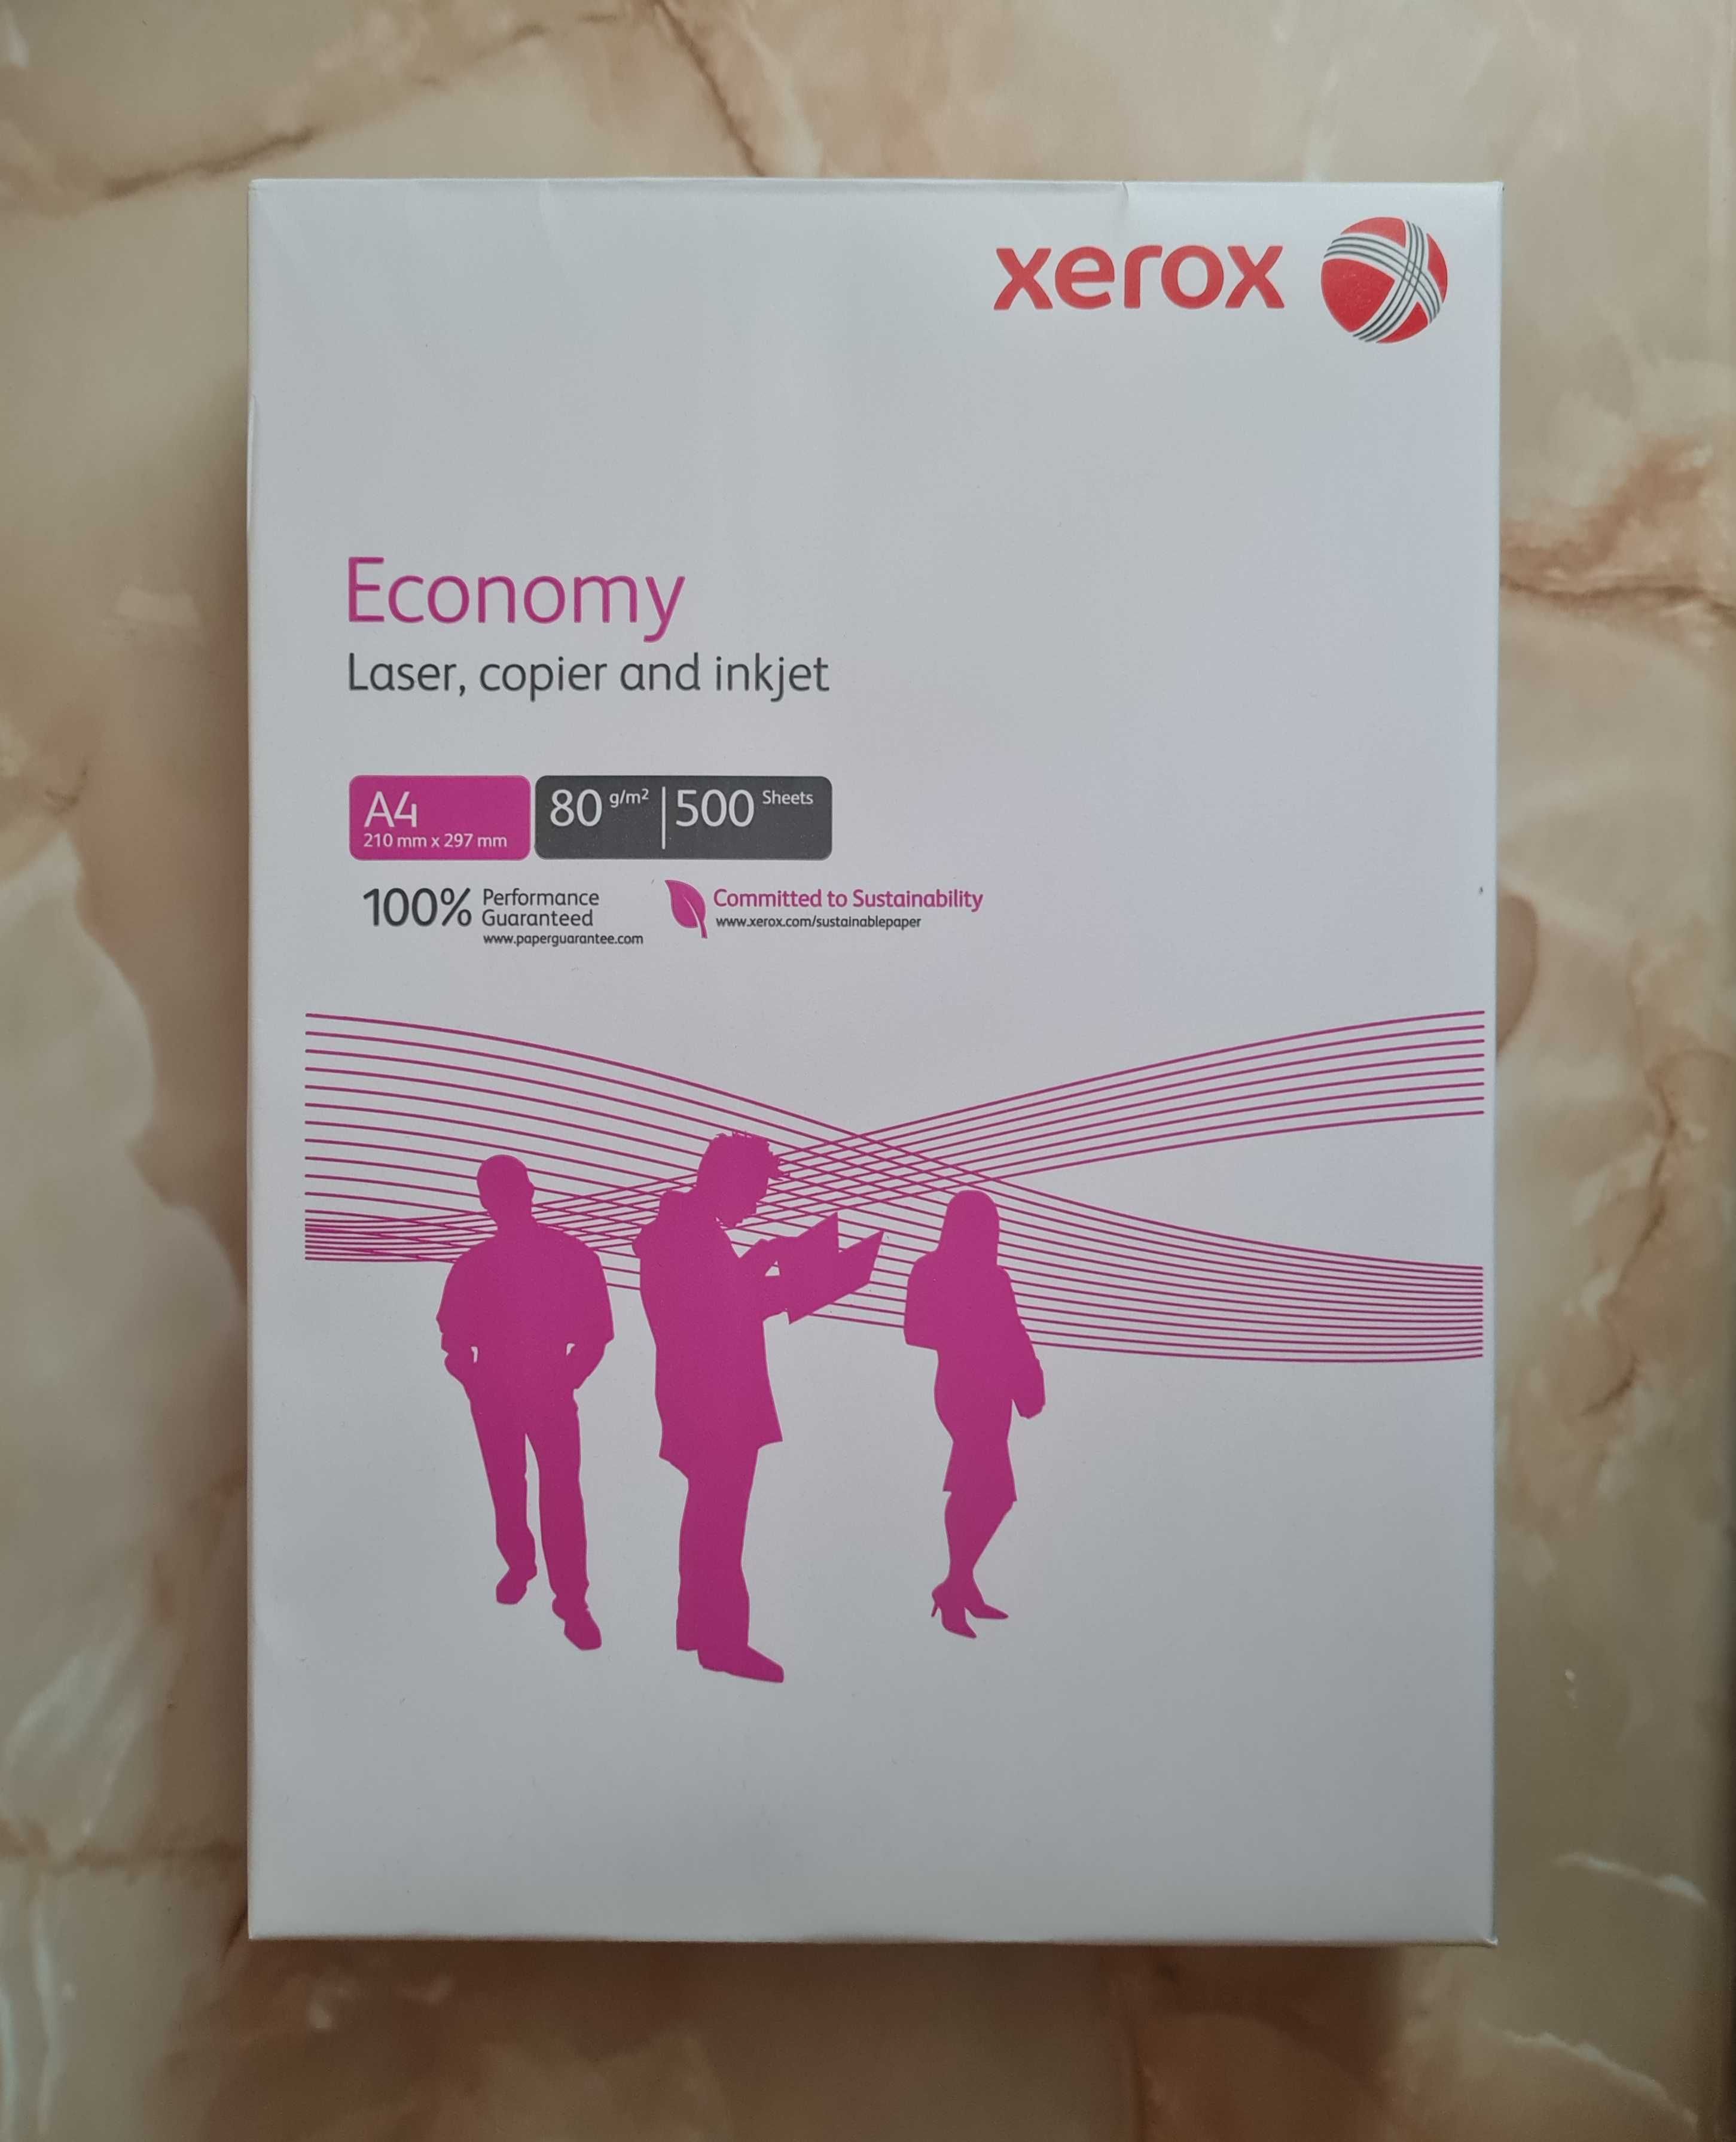 Biały papier kserograficzny A4 do drukarki/biurowy XEROX Economy 5 ryz